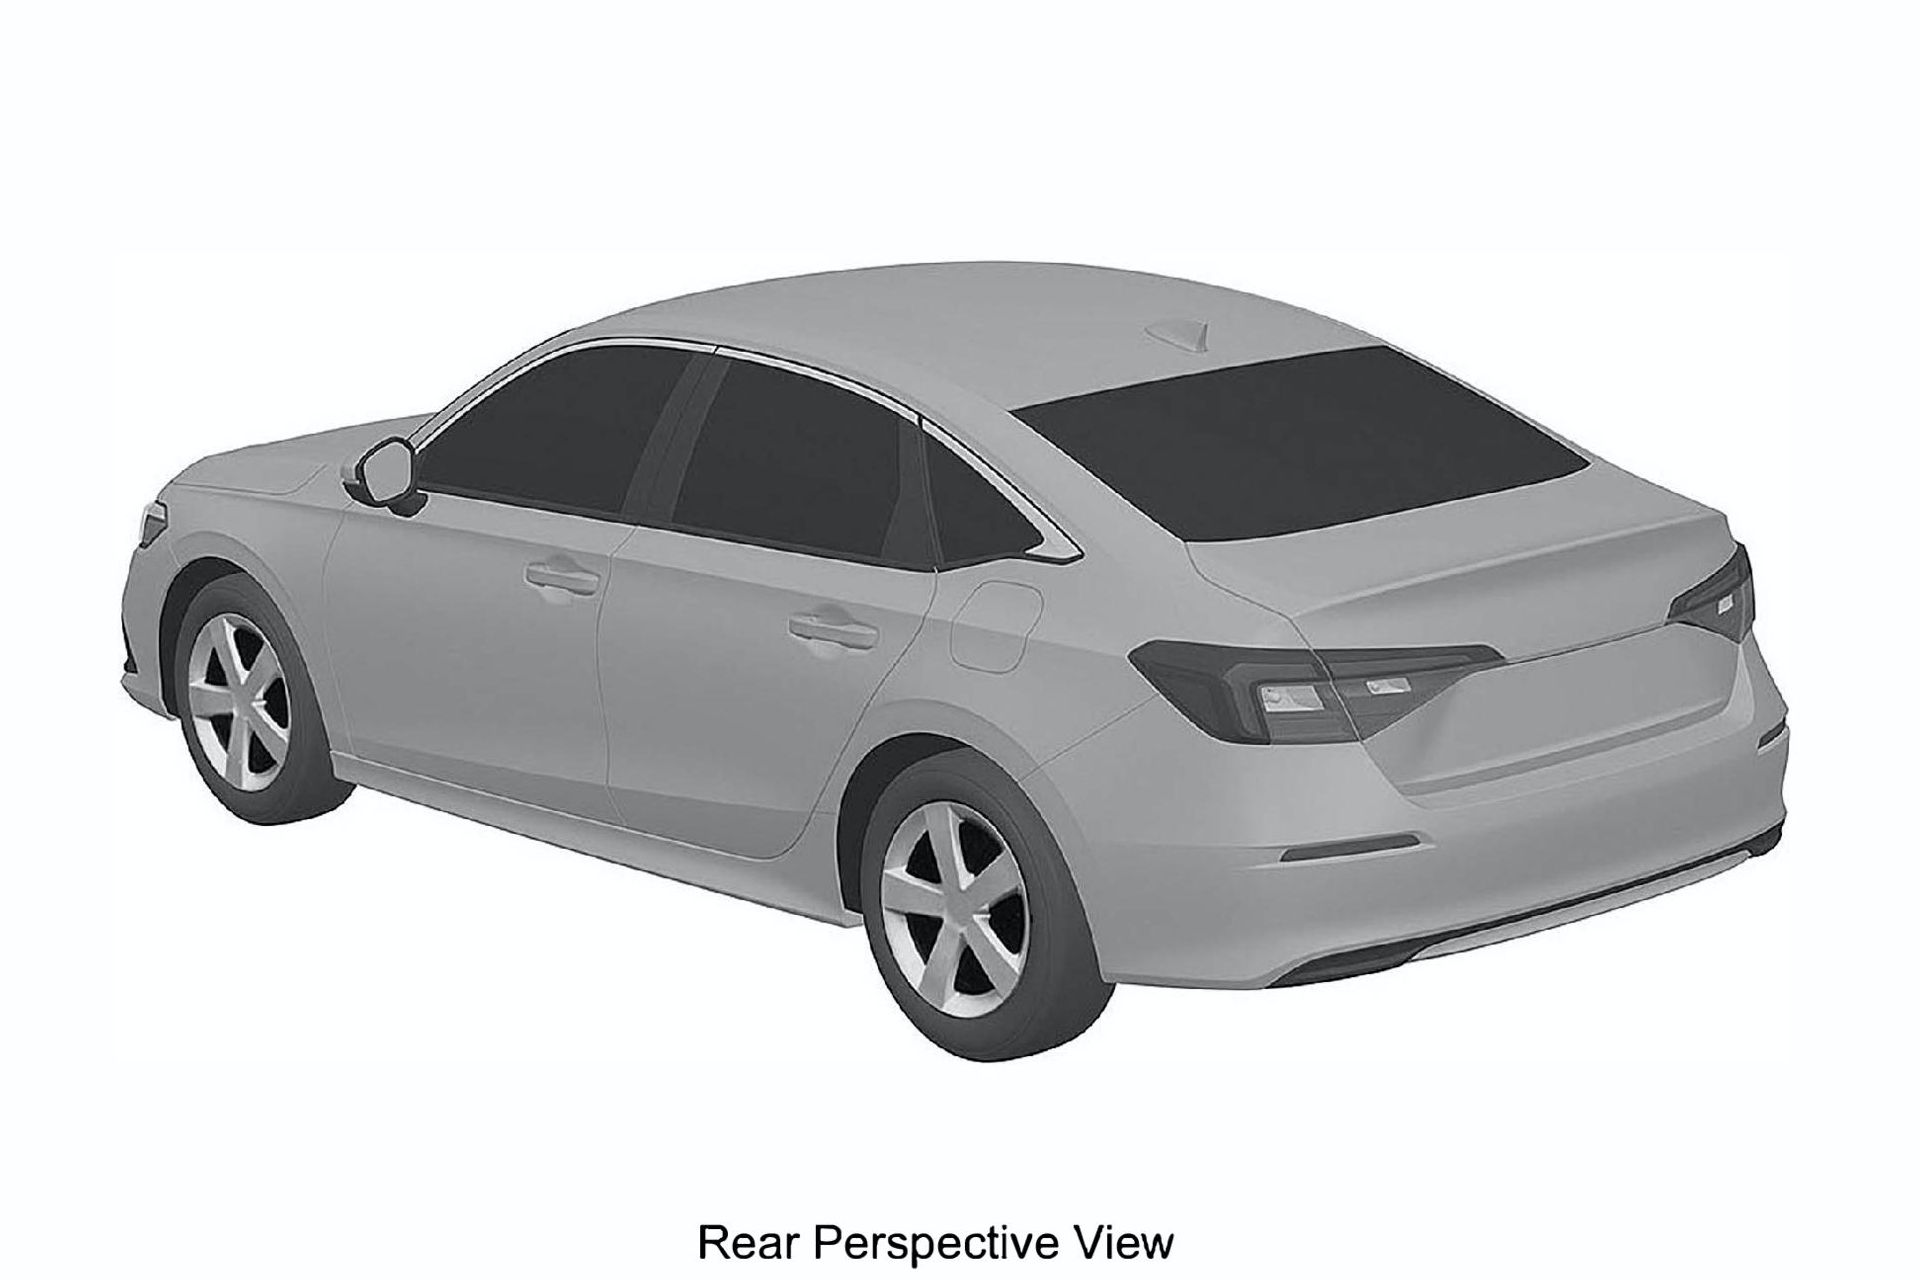 2022-honda-civic-sedan-patent-images-2.jpg